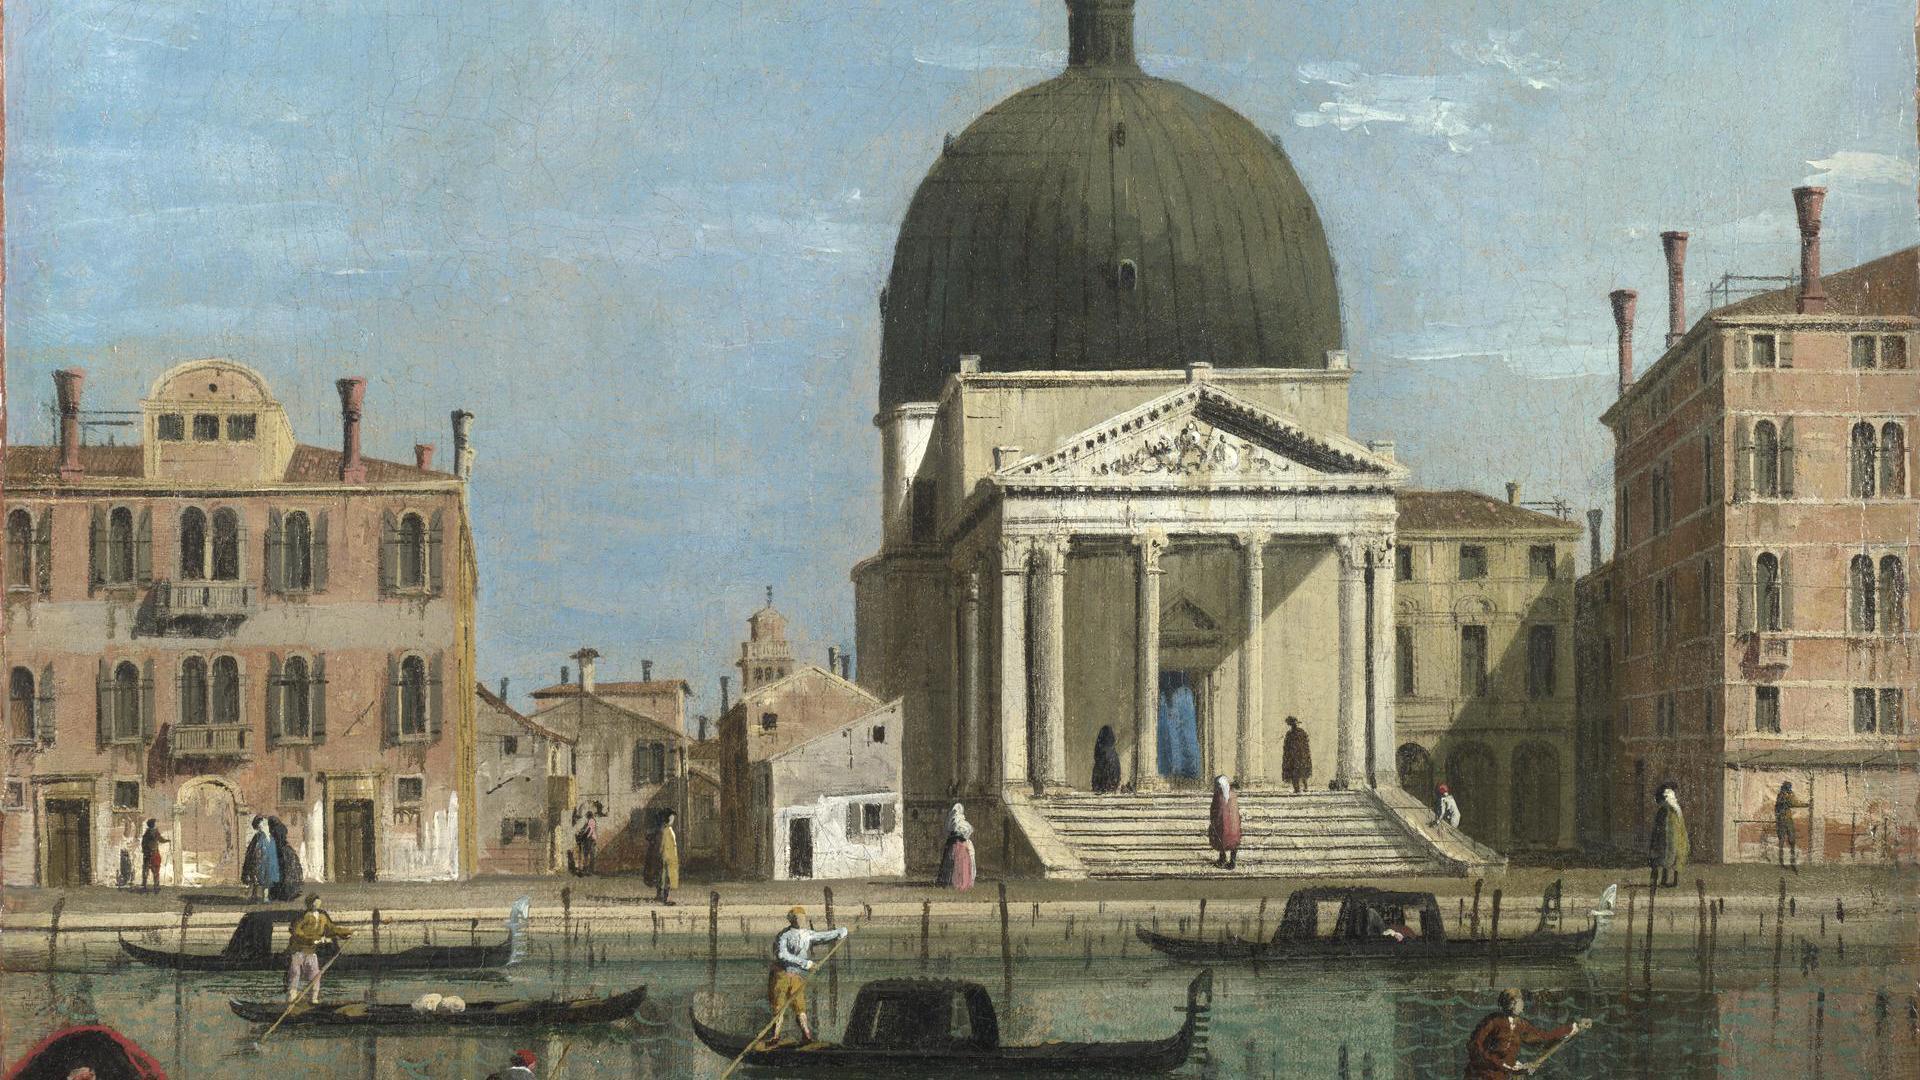 Venice: S. Simeone Piccolo by Follower of Canaletto